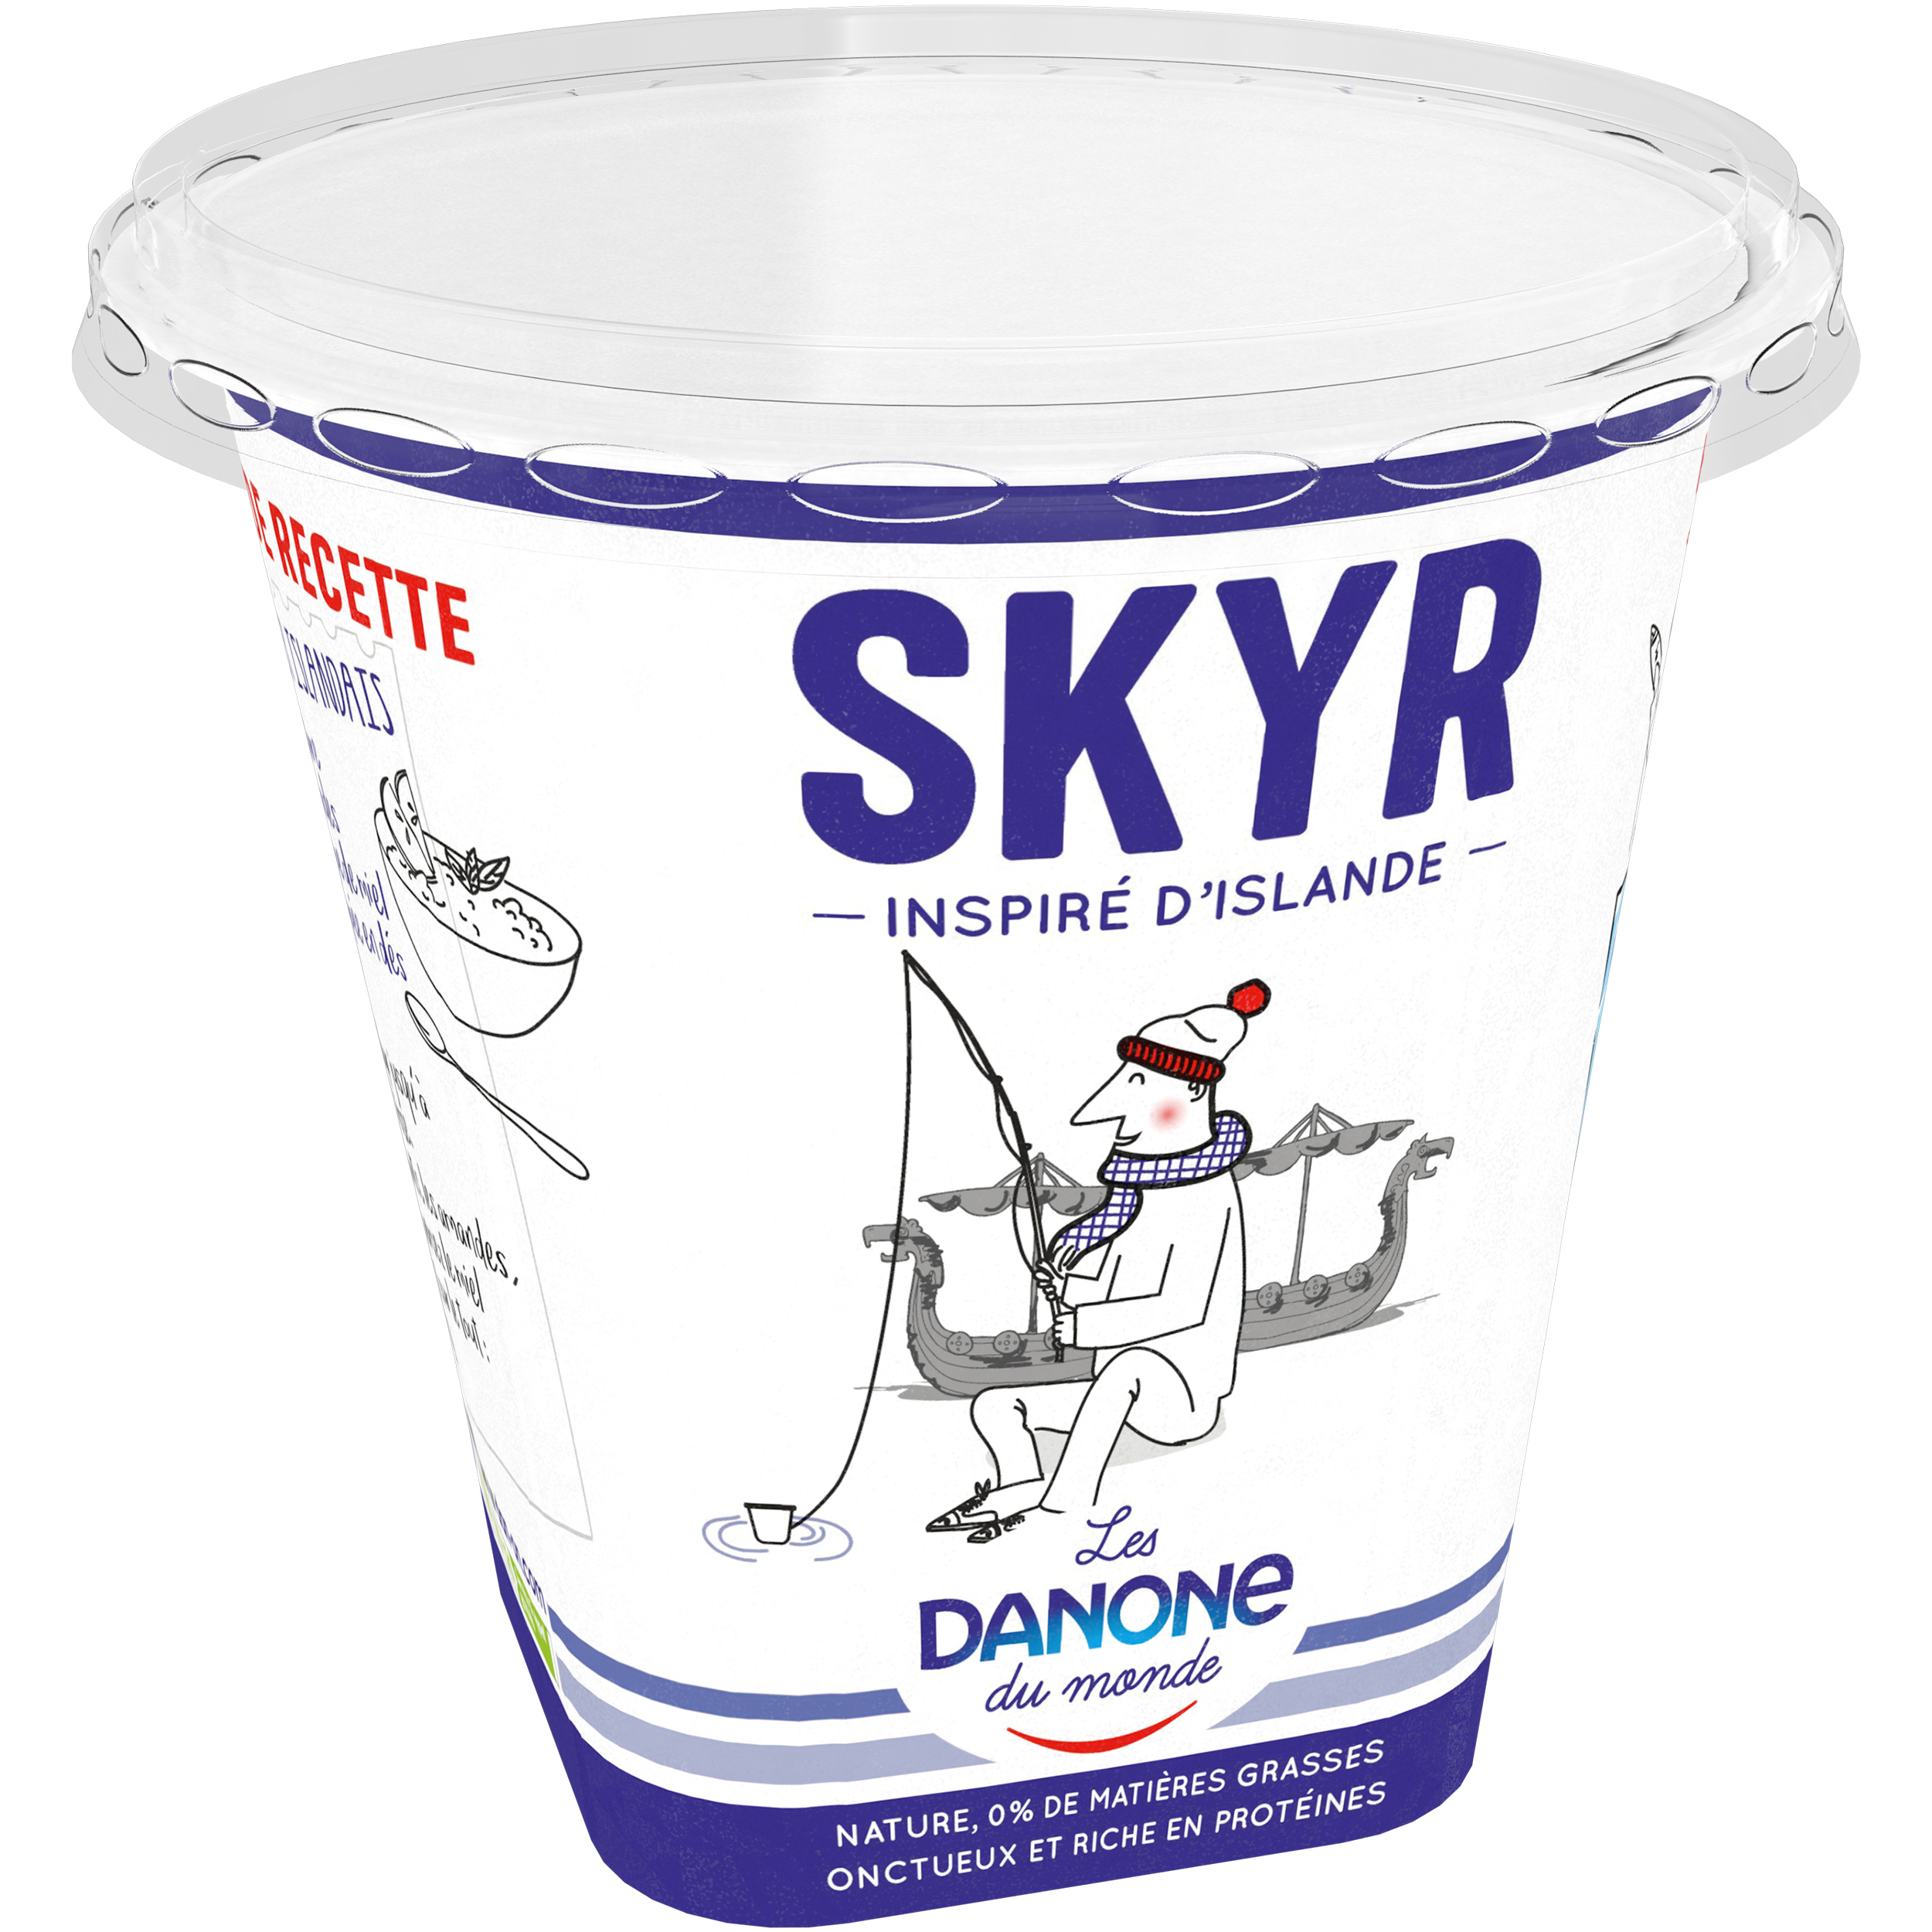 Avis Nutrifaz sur le yaourt Skyr de Danone